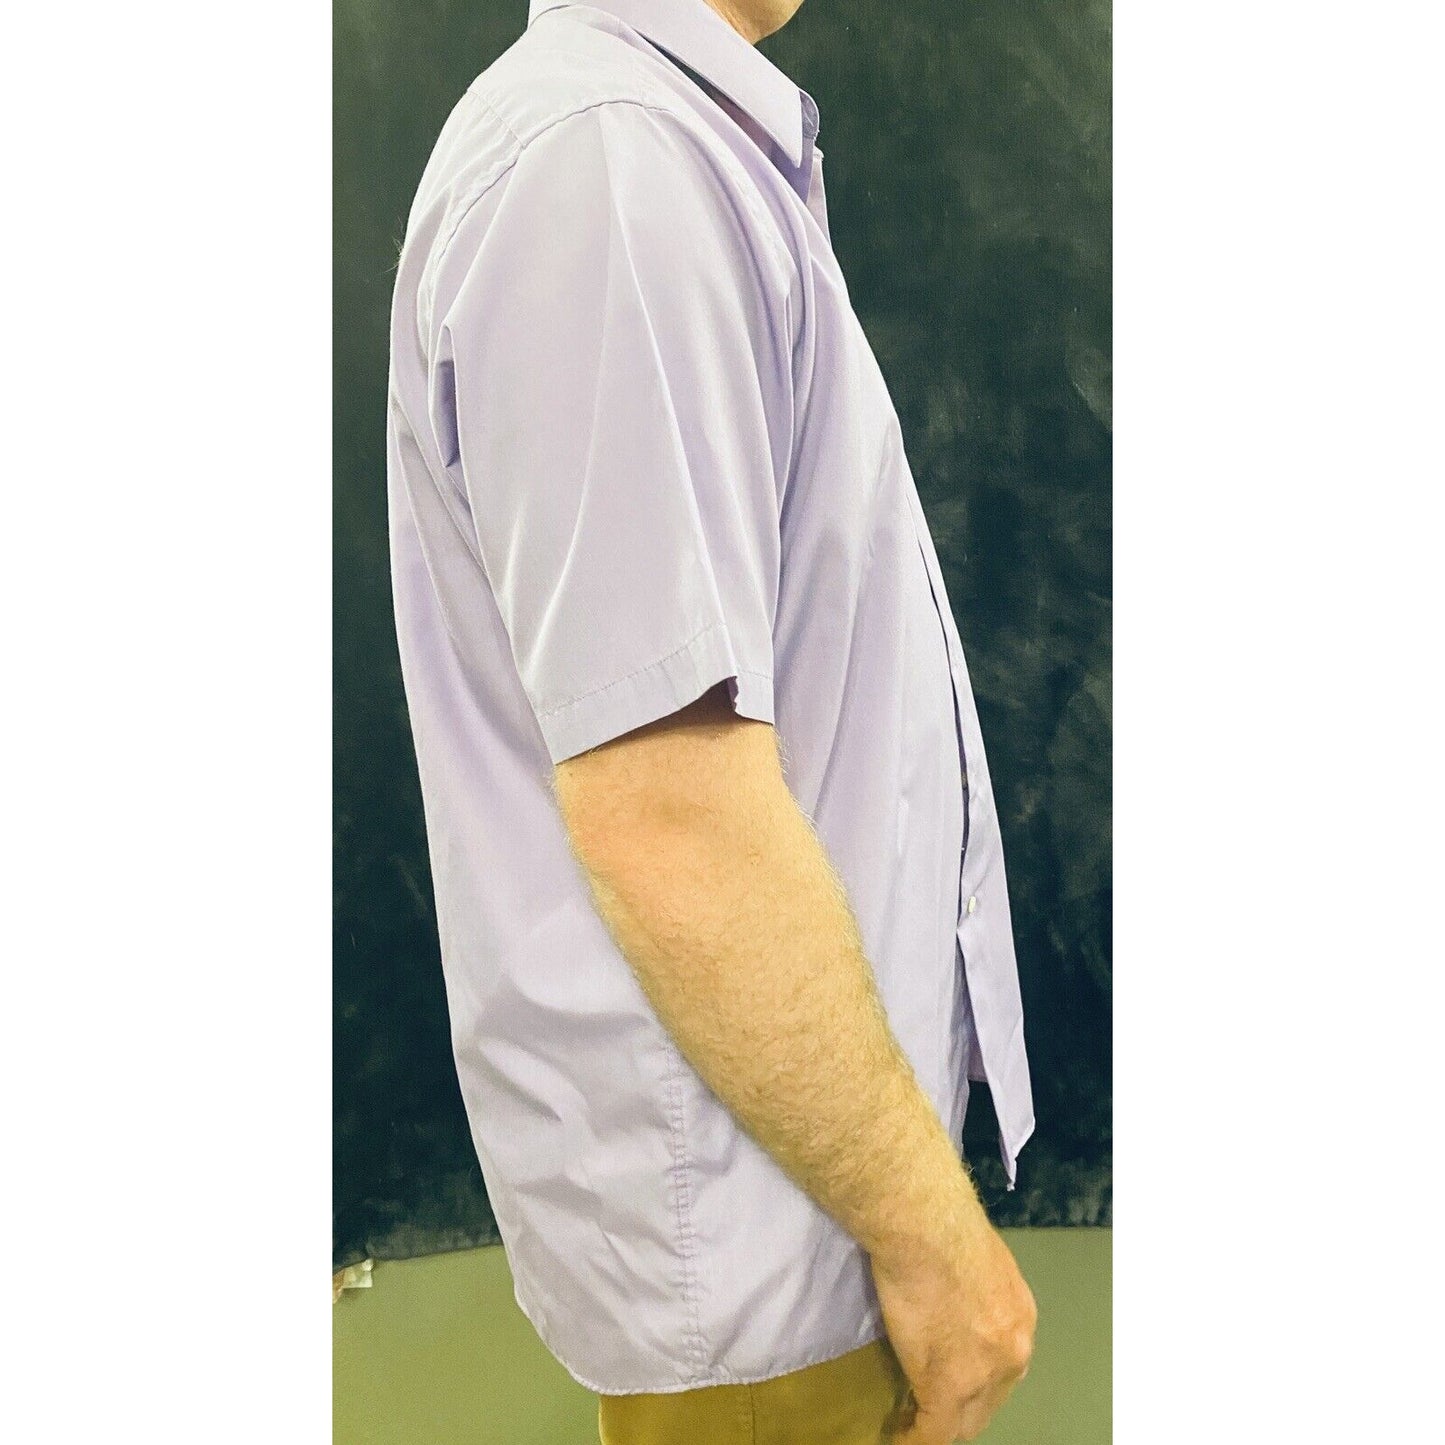 Arrow Lavender Men’s Large Short Sleeve Button-down Dress Shirt 16 1/2